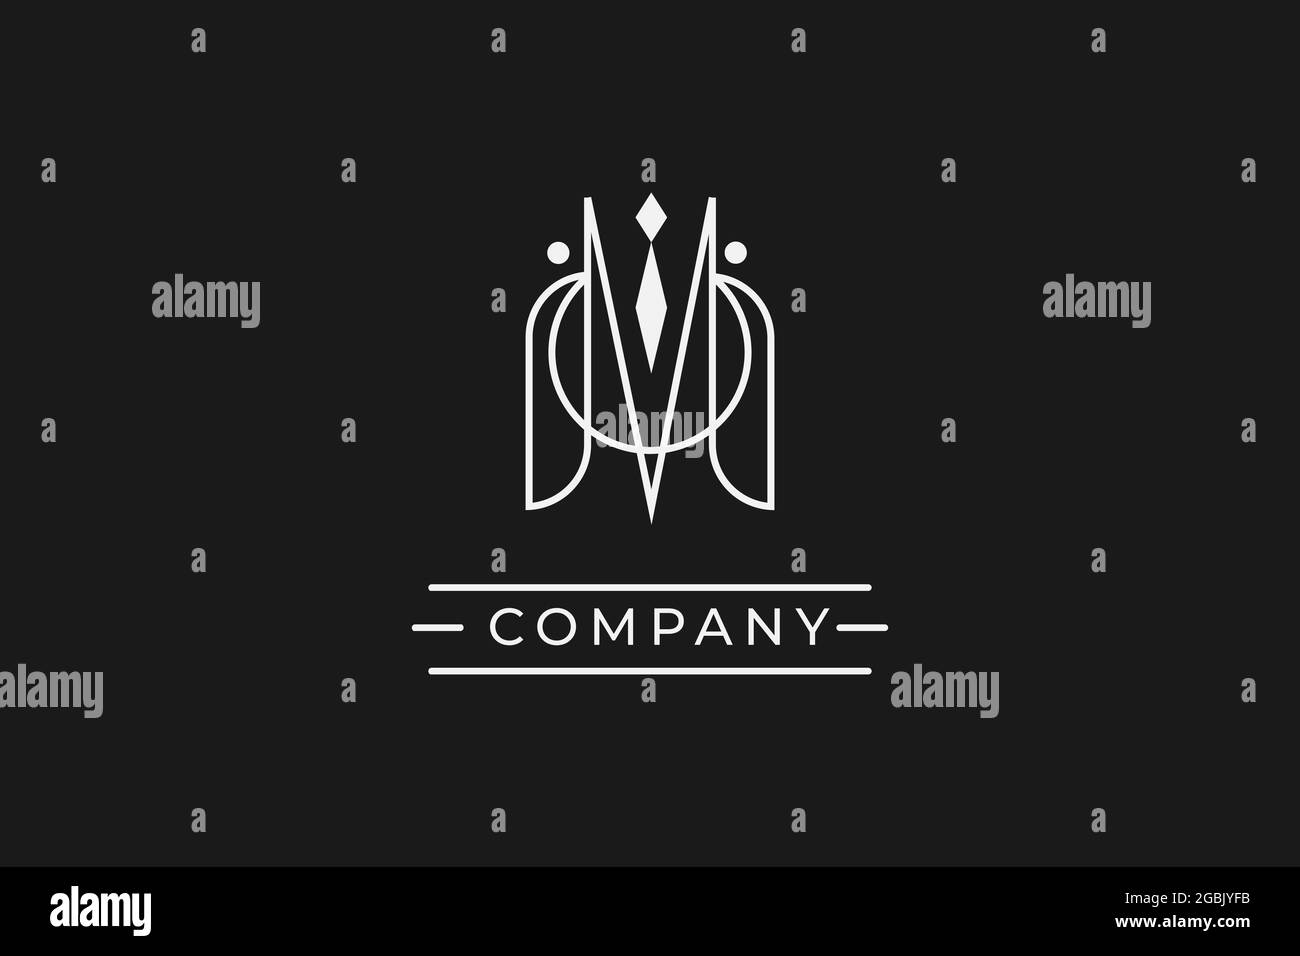 abstract logo company. usable logo design for private logo, business name card web icon, social media icon Stock Vector